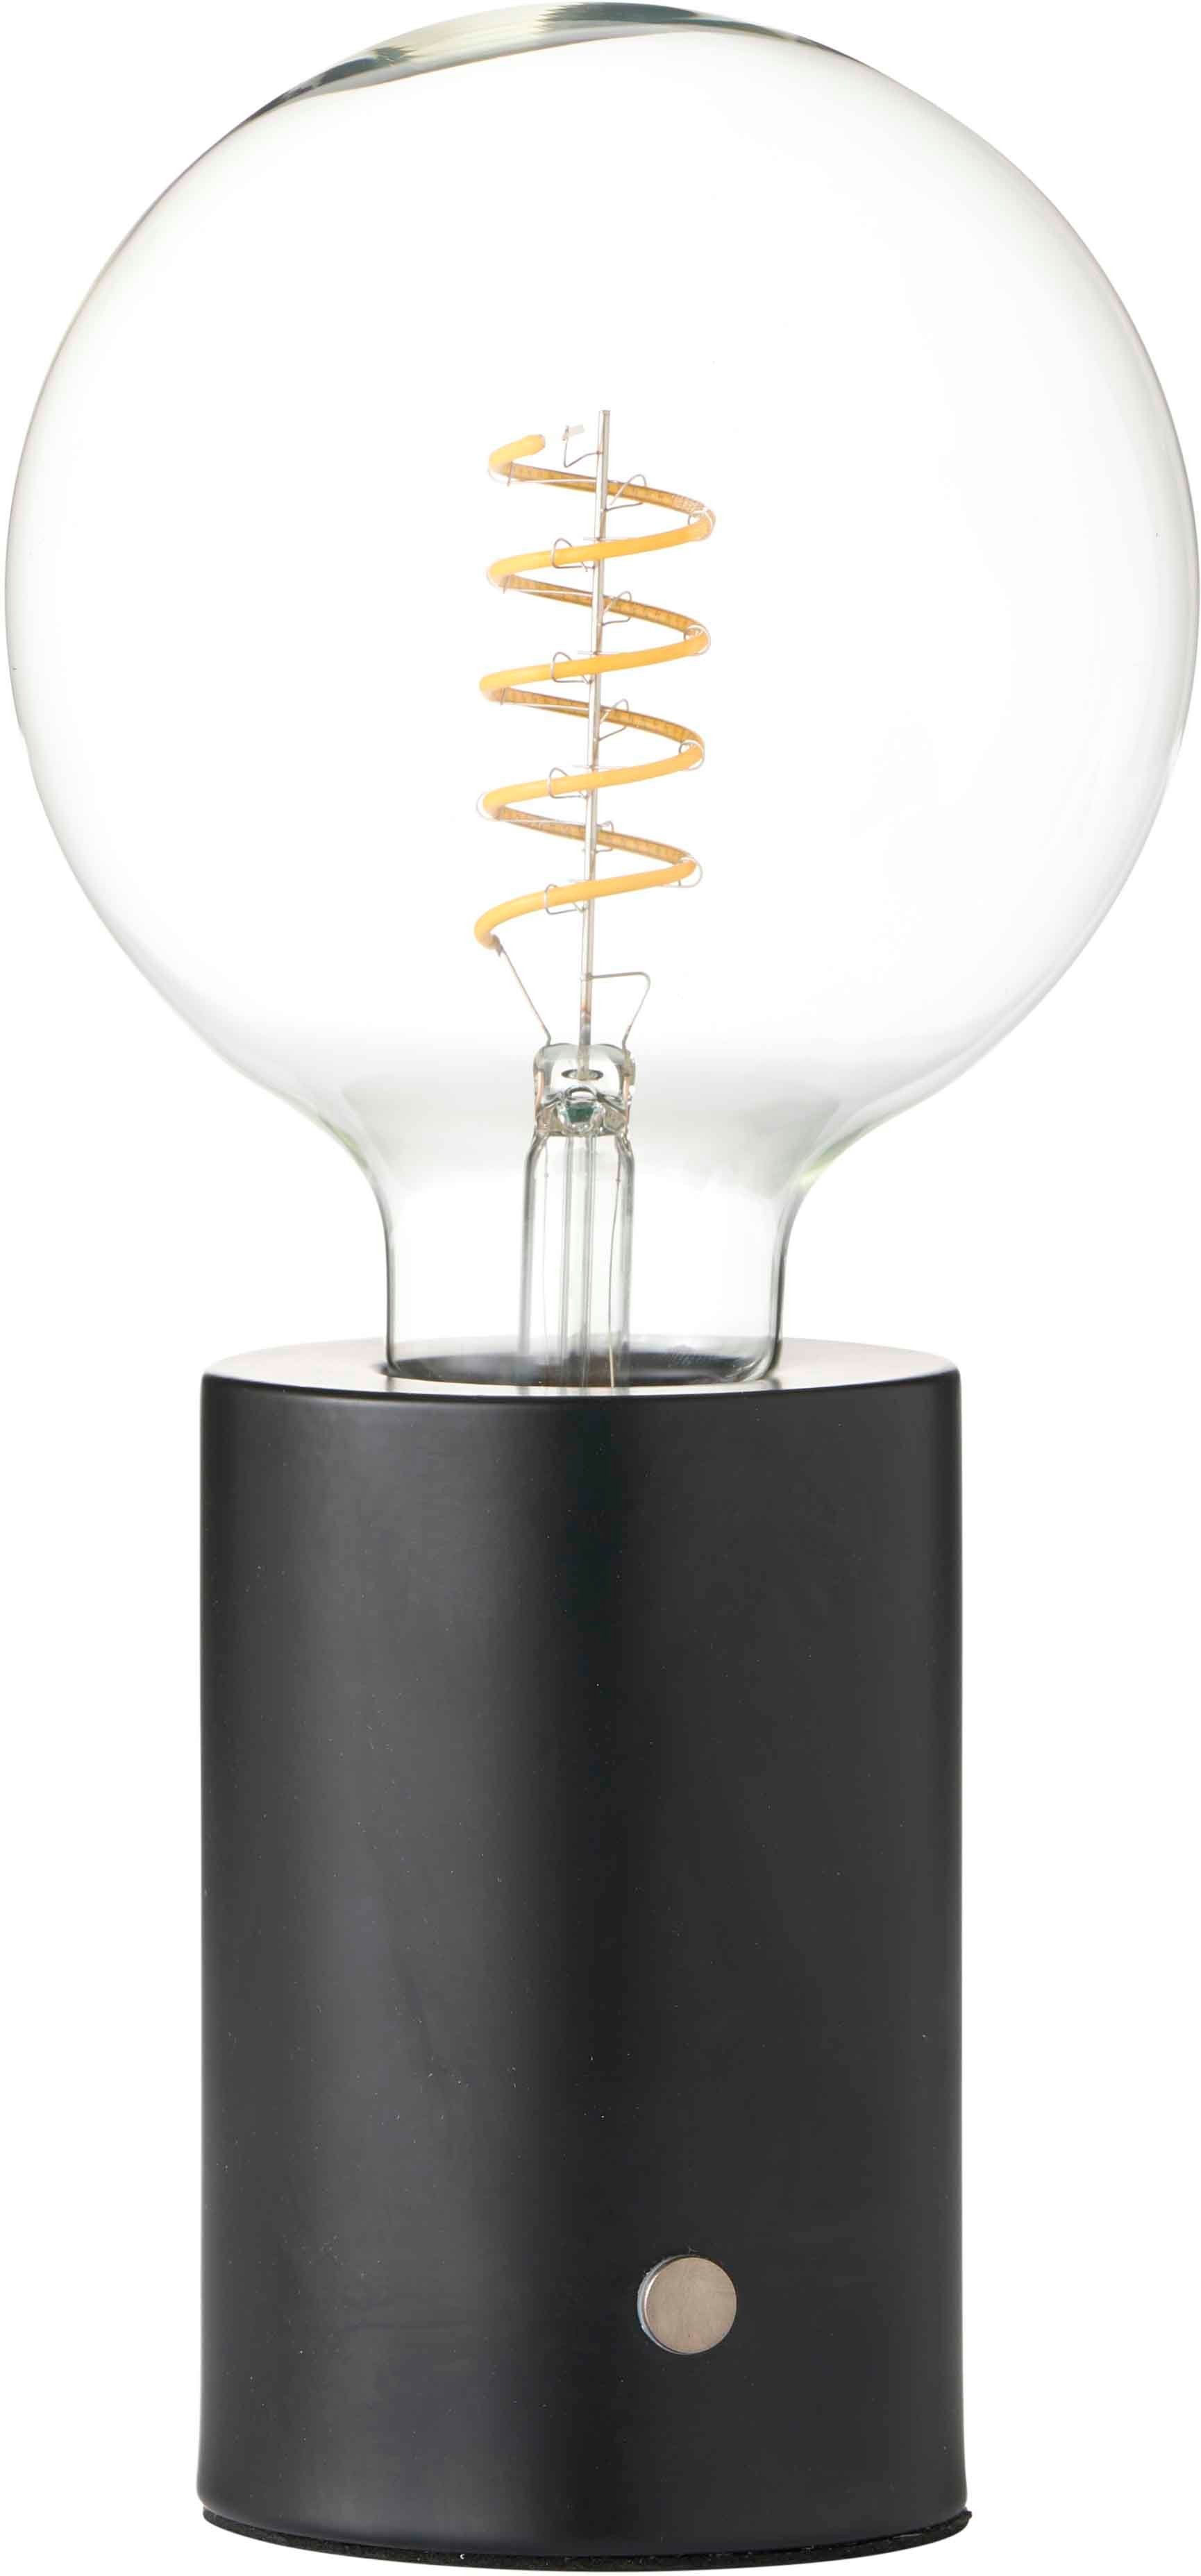 Northpoint Nachttischlampe LED Akku Tischlampe Tischleuchte Edison Glühbirne mit Glühdraht Schwarz-Matt